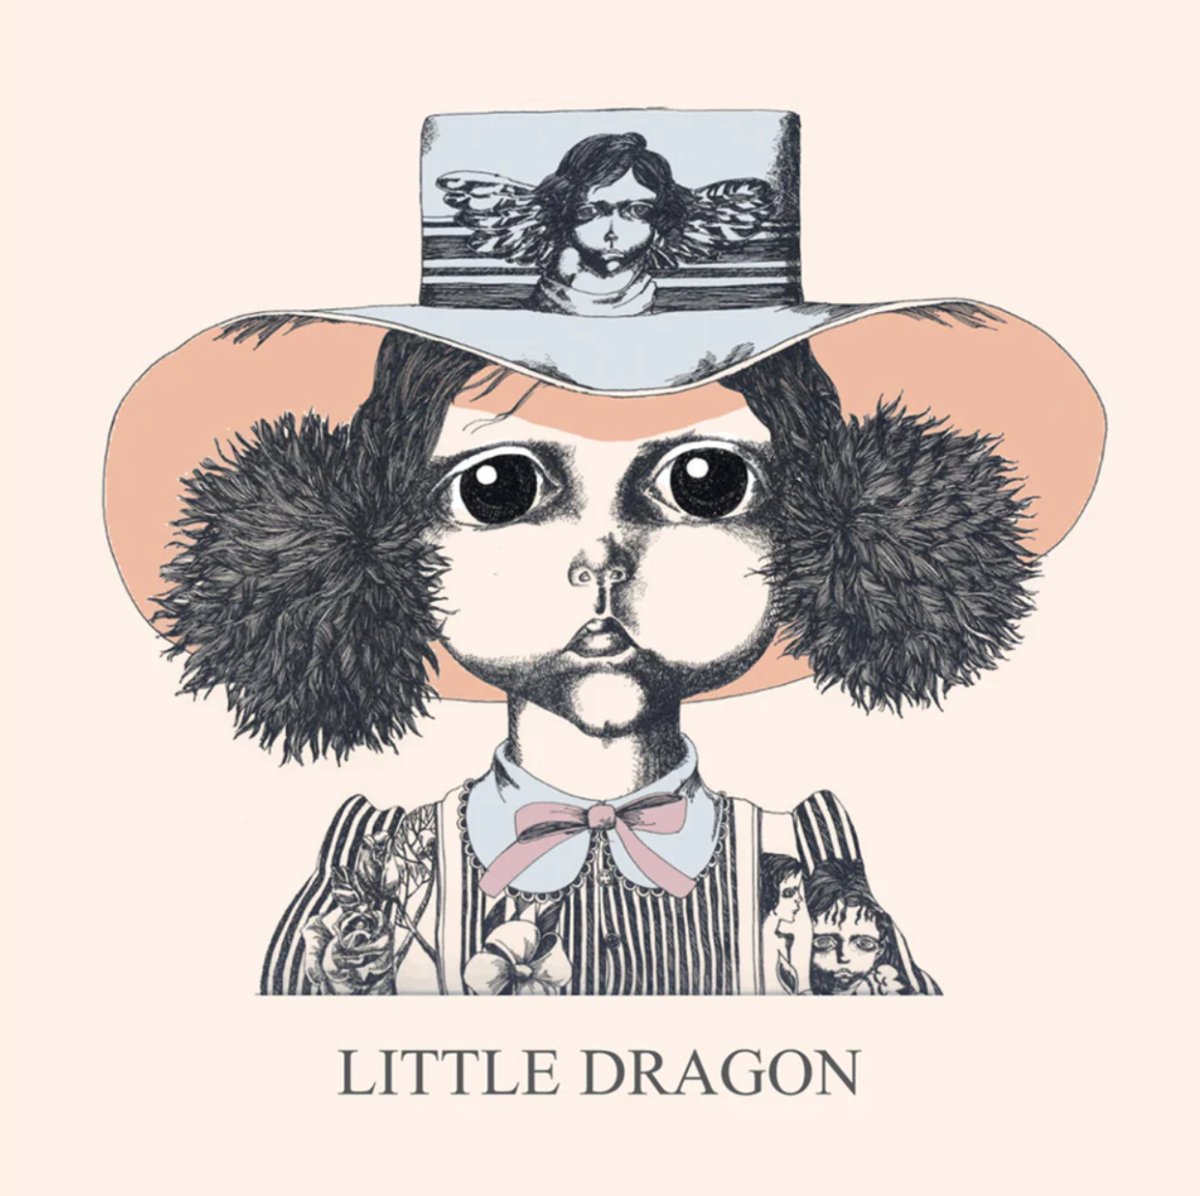 Little Dragon - Little Dragon - Inner Ocean Records